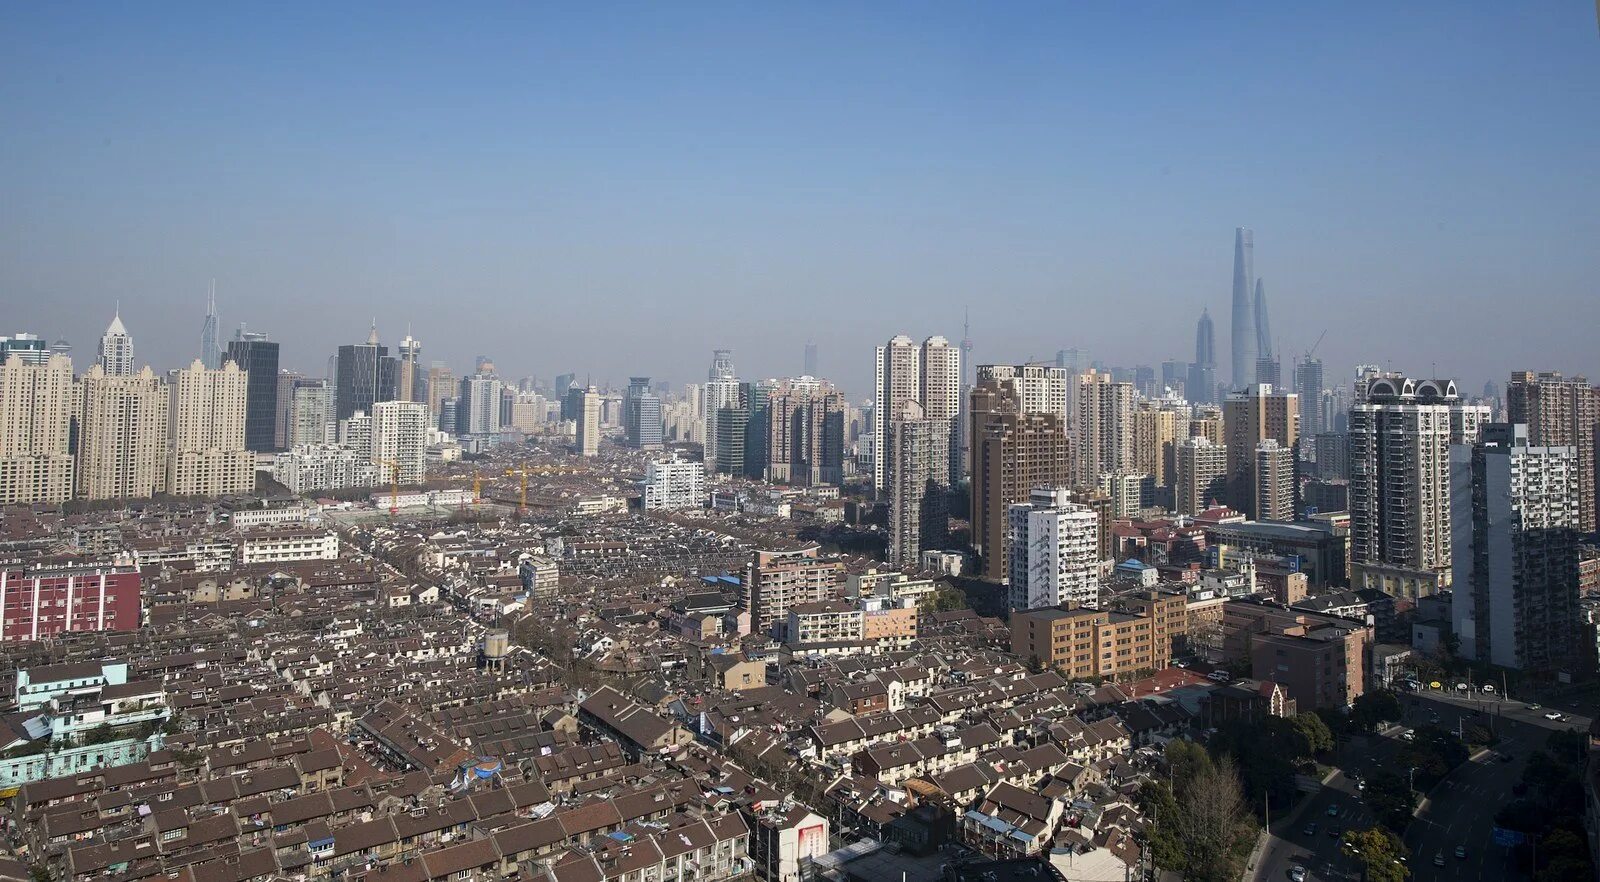 Шанхай оренбург. Шанхай фото 2000. Шанхай Оренбург фото. Шанхай фото жилых кварталов. Шанхай фото с воздуха.